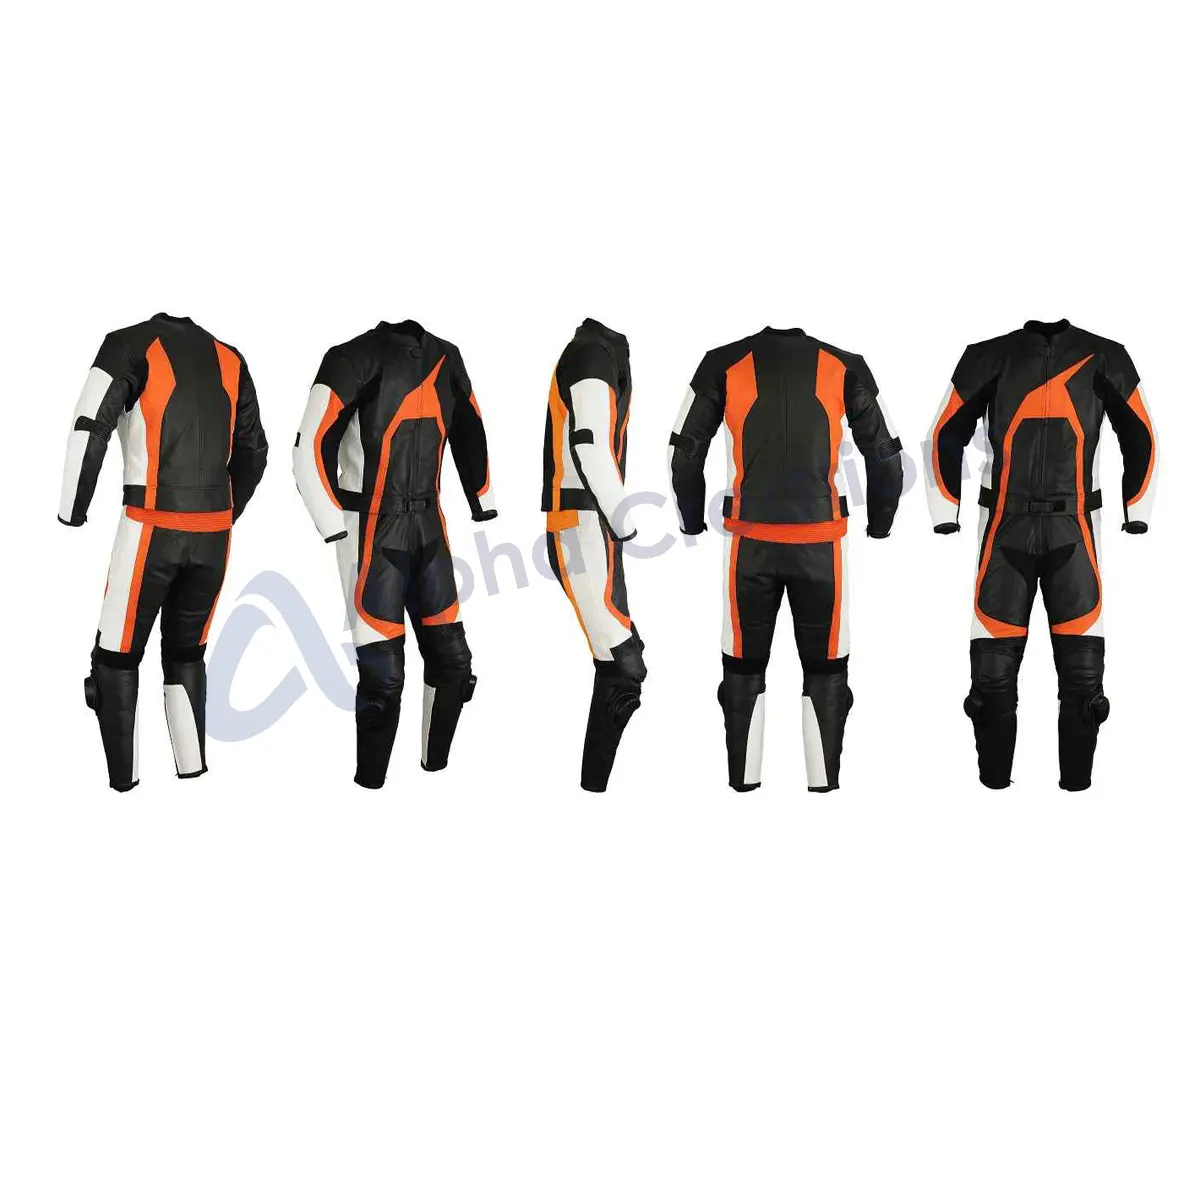 100% yüksek kalite turuncu renk su geçirmez motosiklet takım elbise erkek uygun fiyat moda deri motosiklet takım elbise